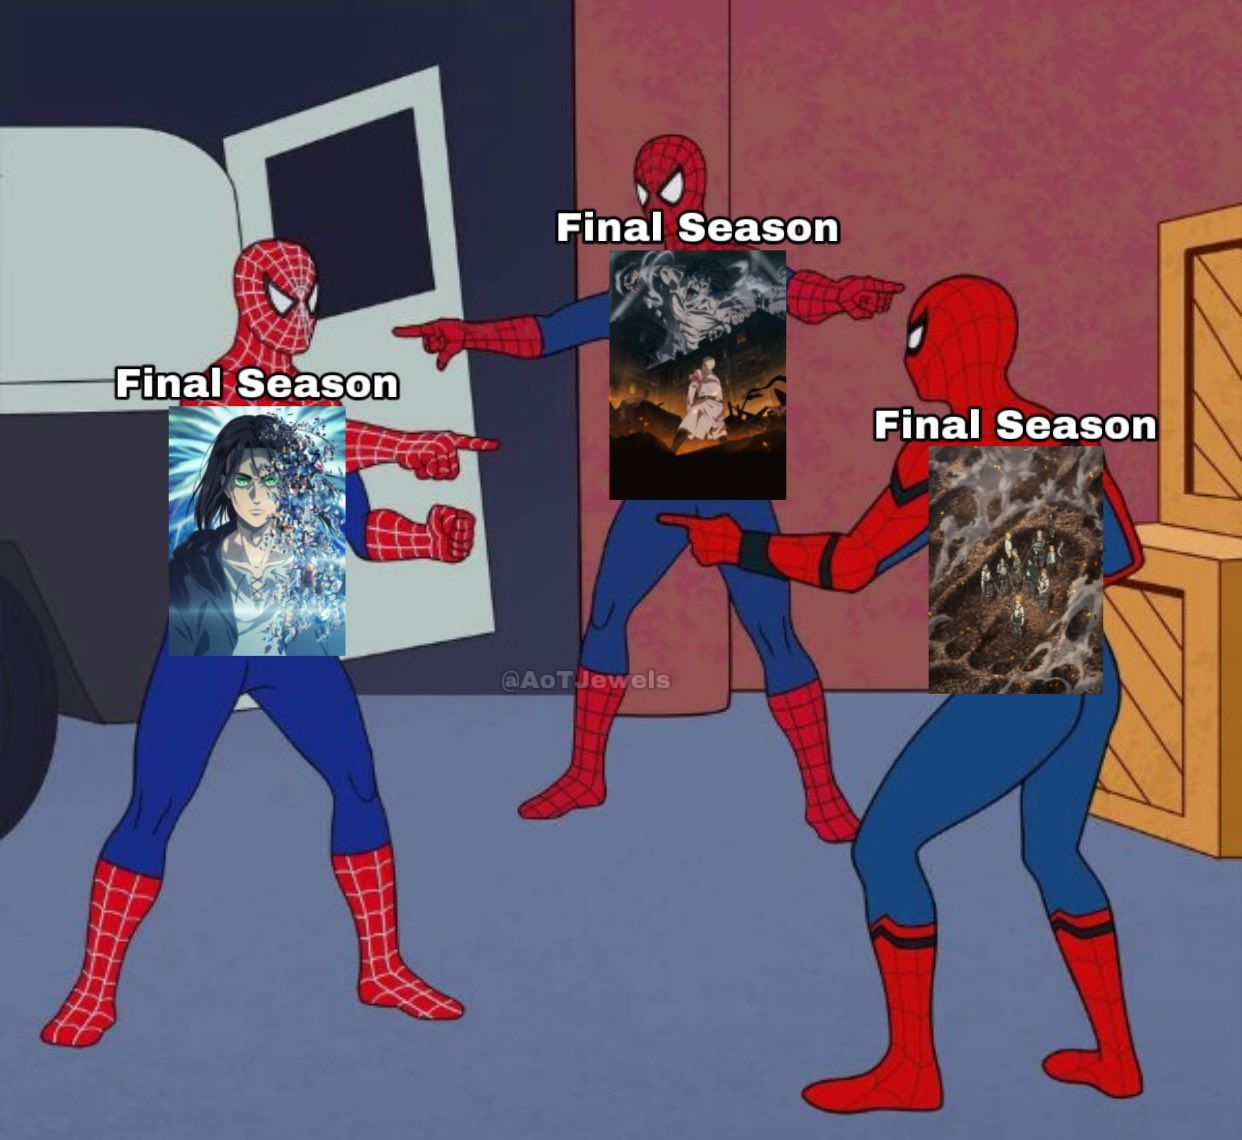 Final season